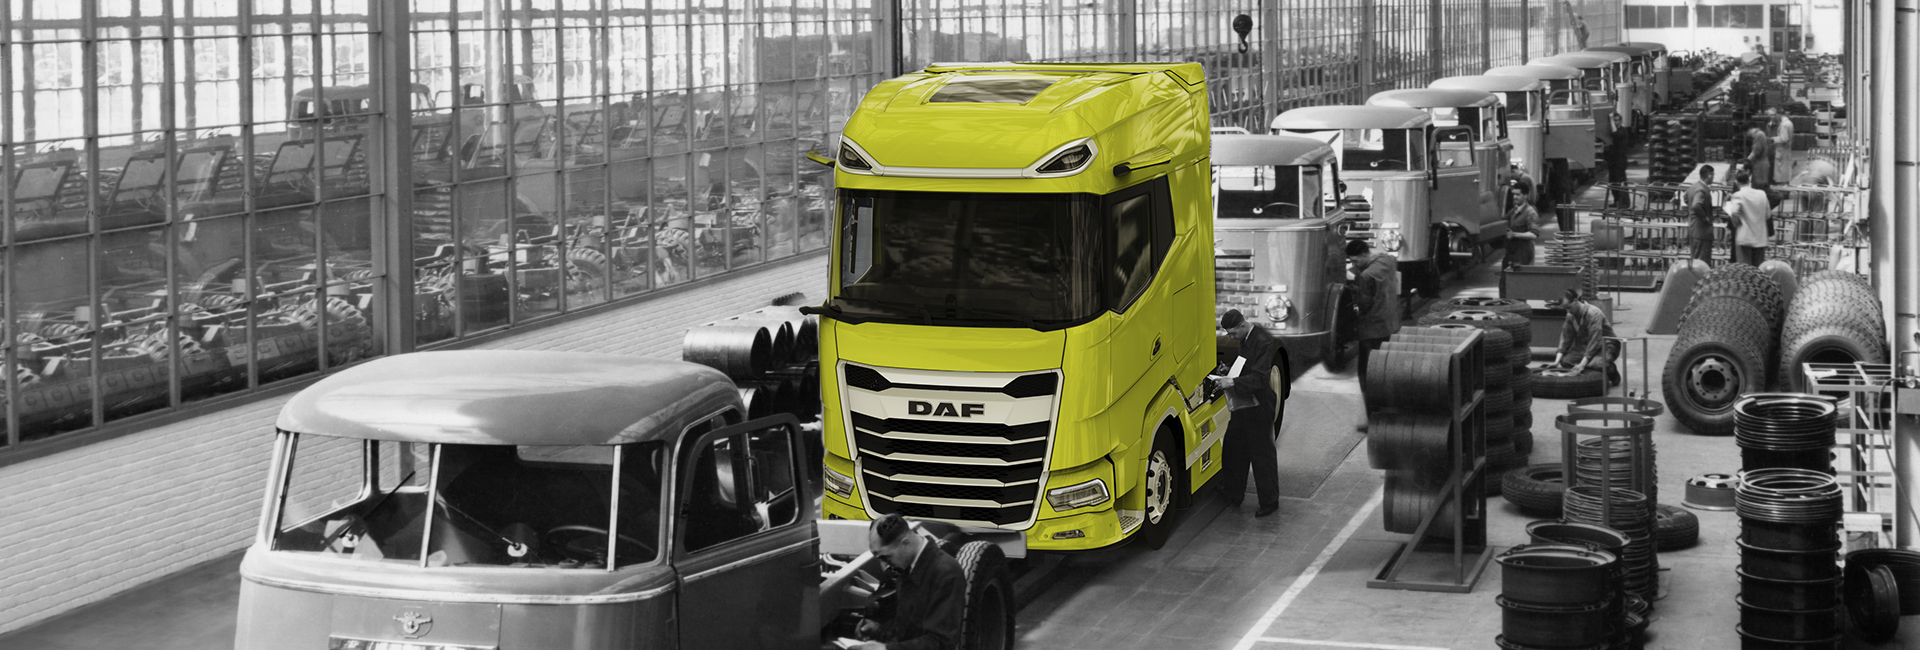 DAF Worldwide - DAF Trucks N.V.